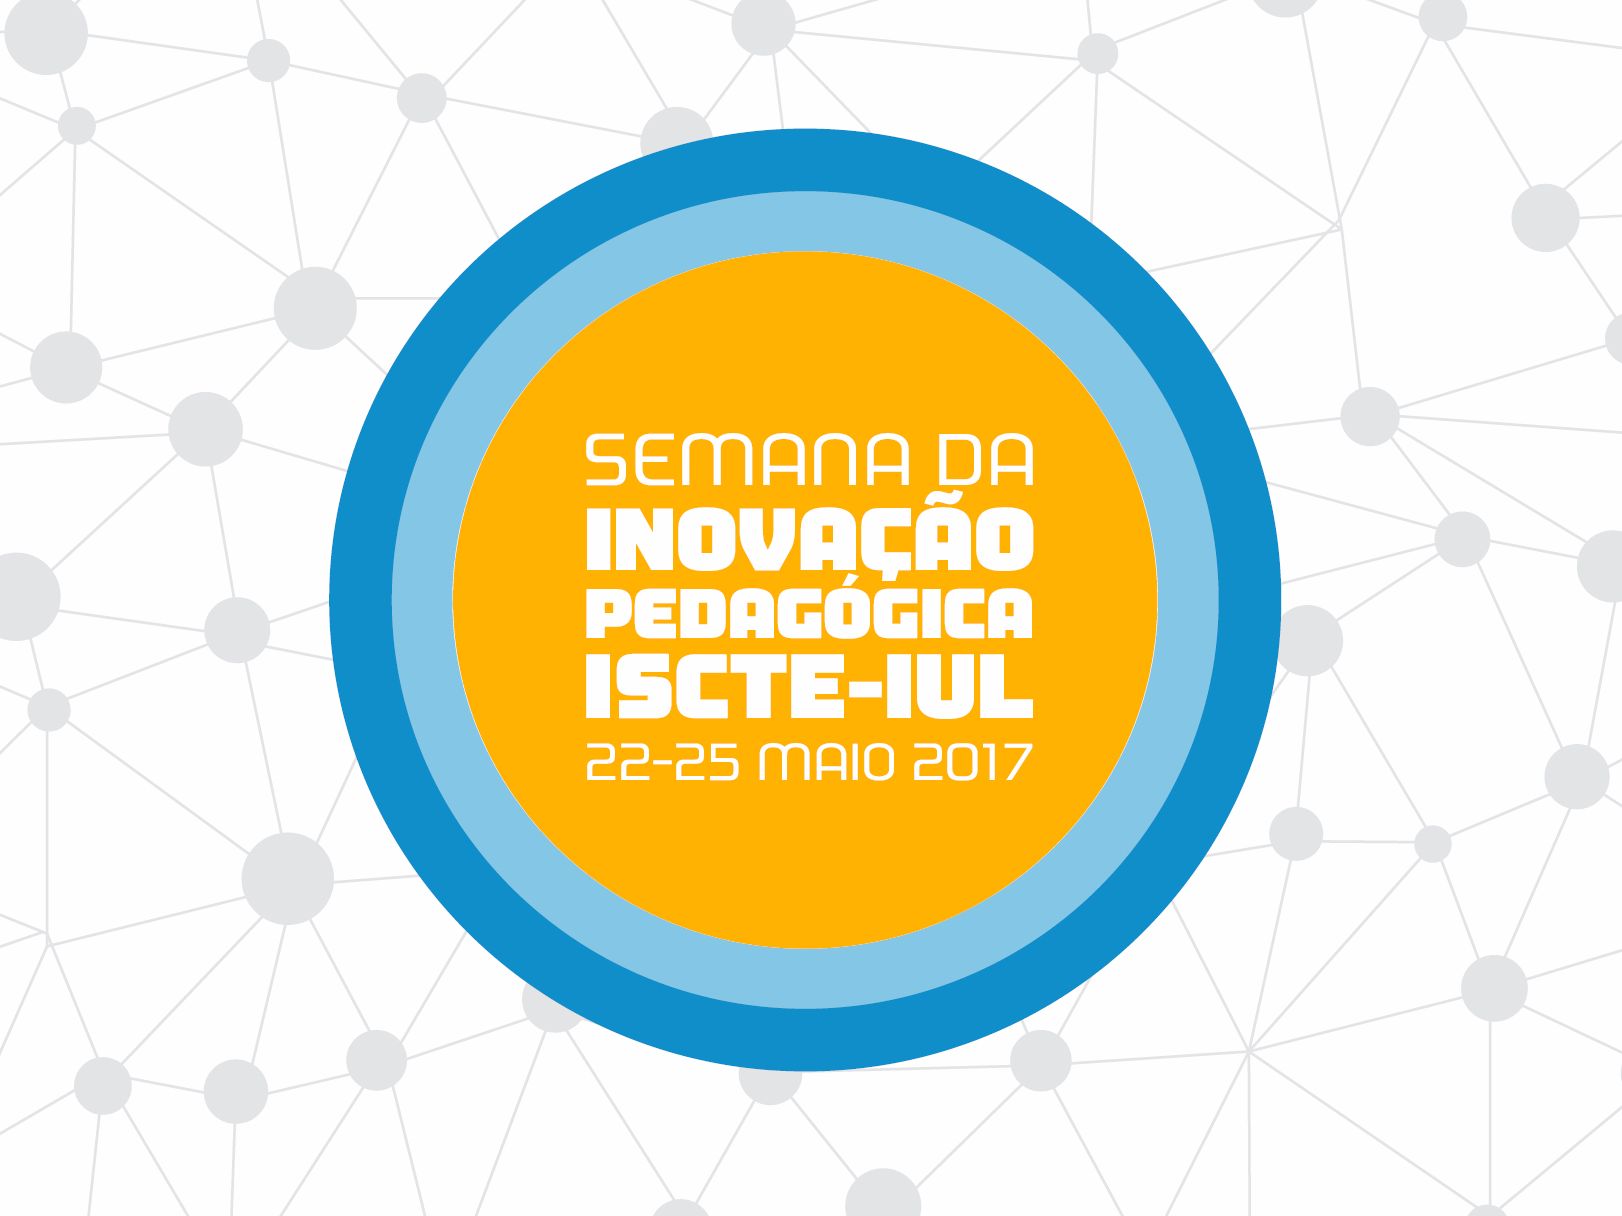 Semana da Inovação Pedagógica 2017